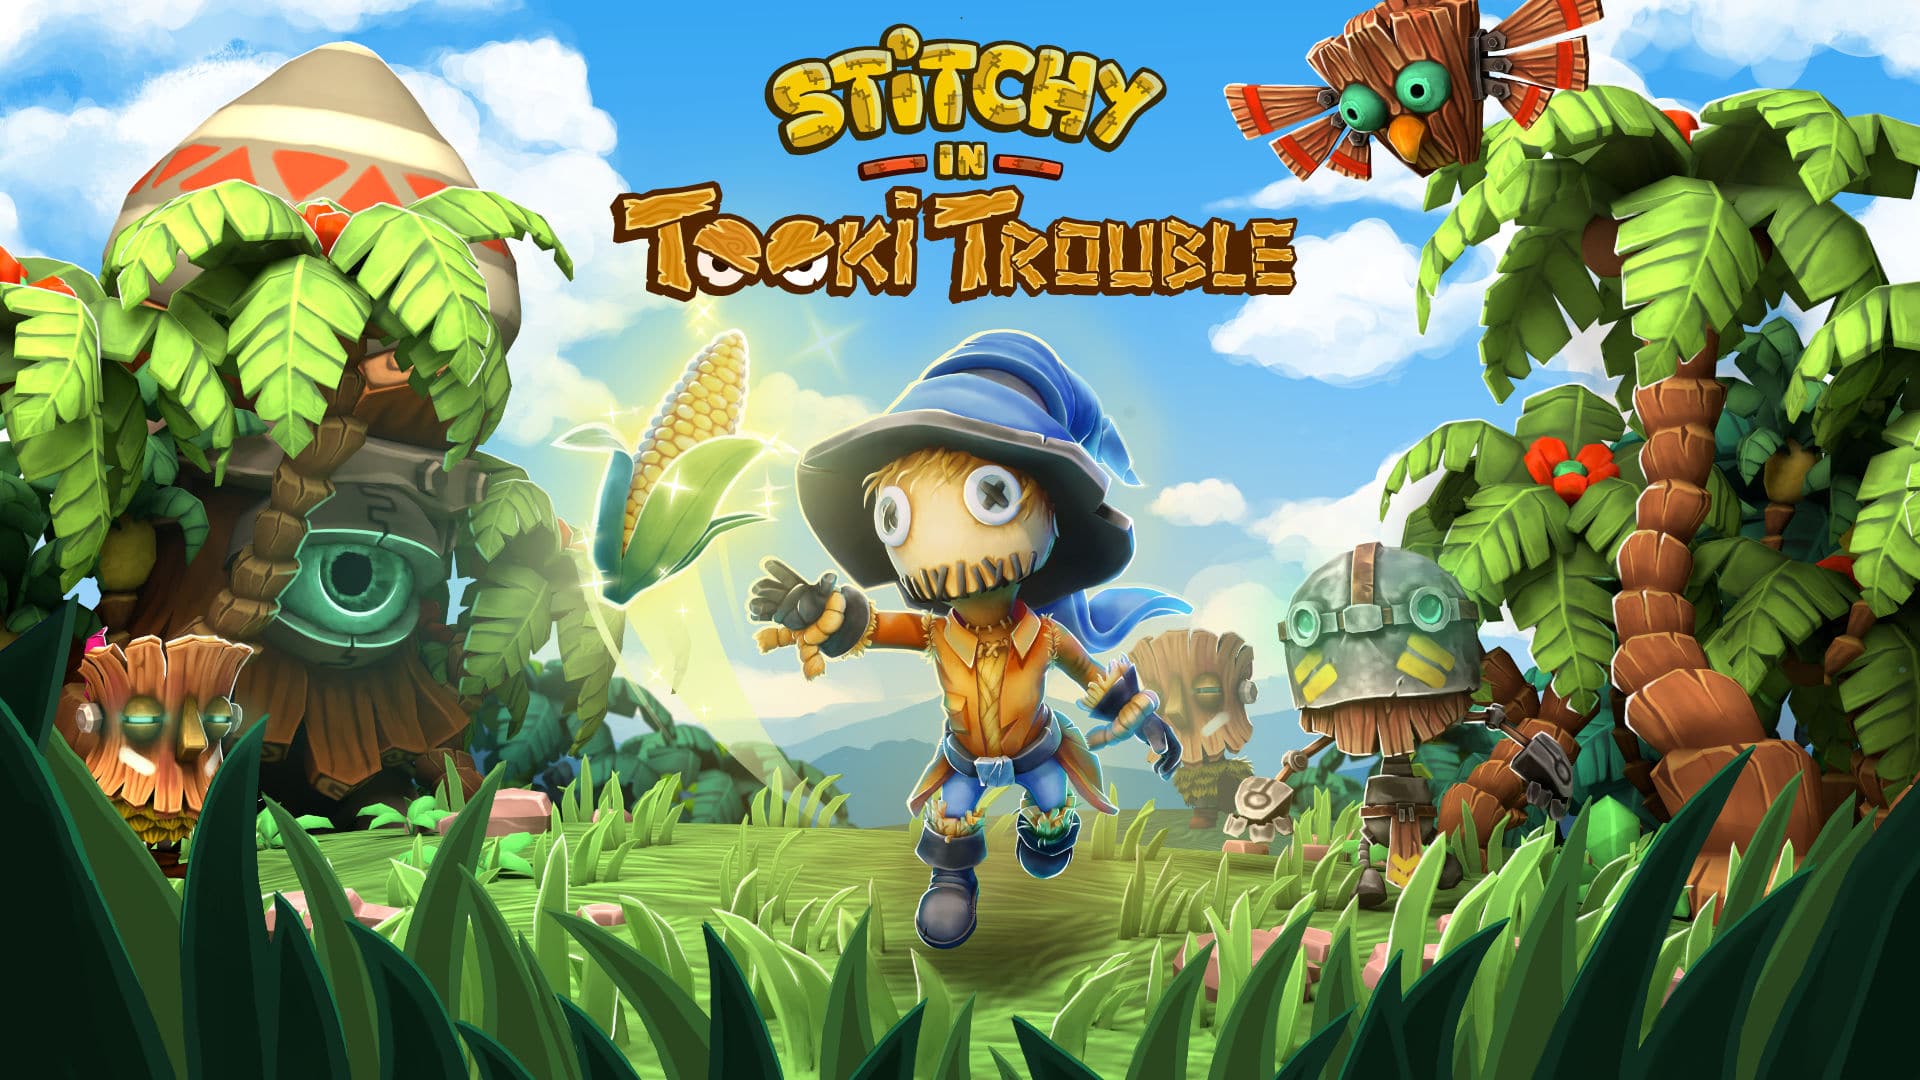 Stitchy in Tooki Trouble llegará el 15 de abril a Nintendo Switch: detalles y nuevo tráiler